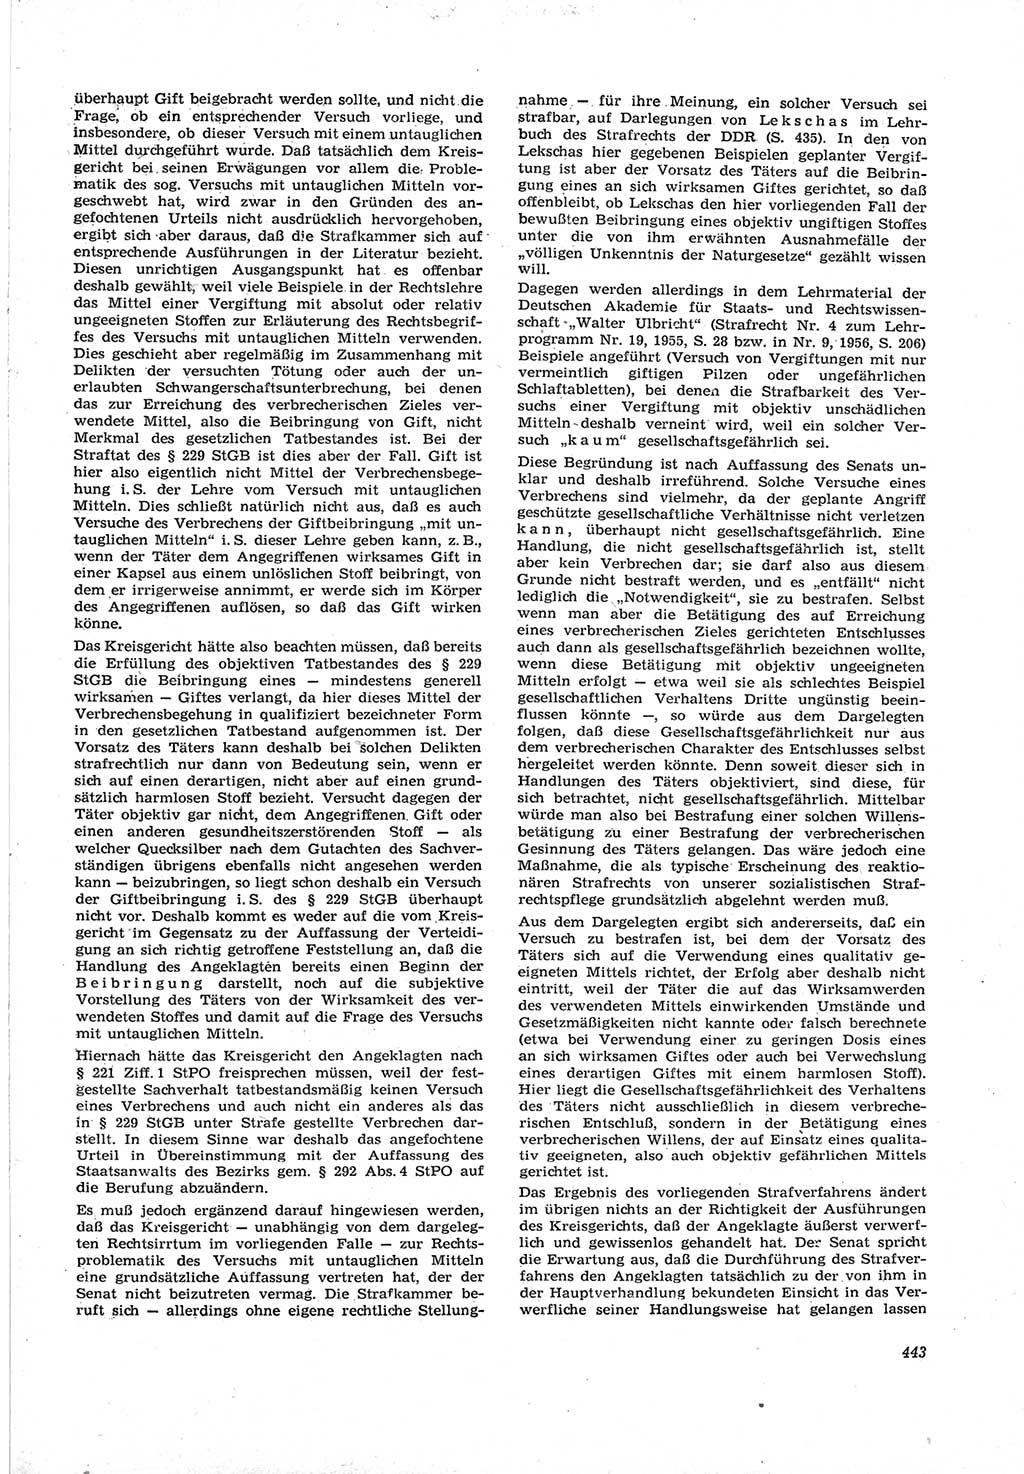 Neue Justiz (NJ), Zeitschrift für Recht und Rechtswissenschaft [Deutsche Demokratische Republik (DDR)], 17. Jahrgang 1963, Seite 443 (NJ DDR 1963, S. 443)